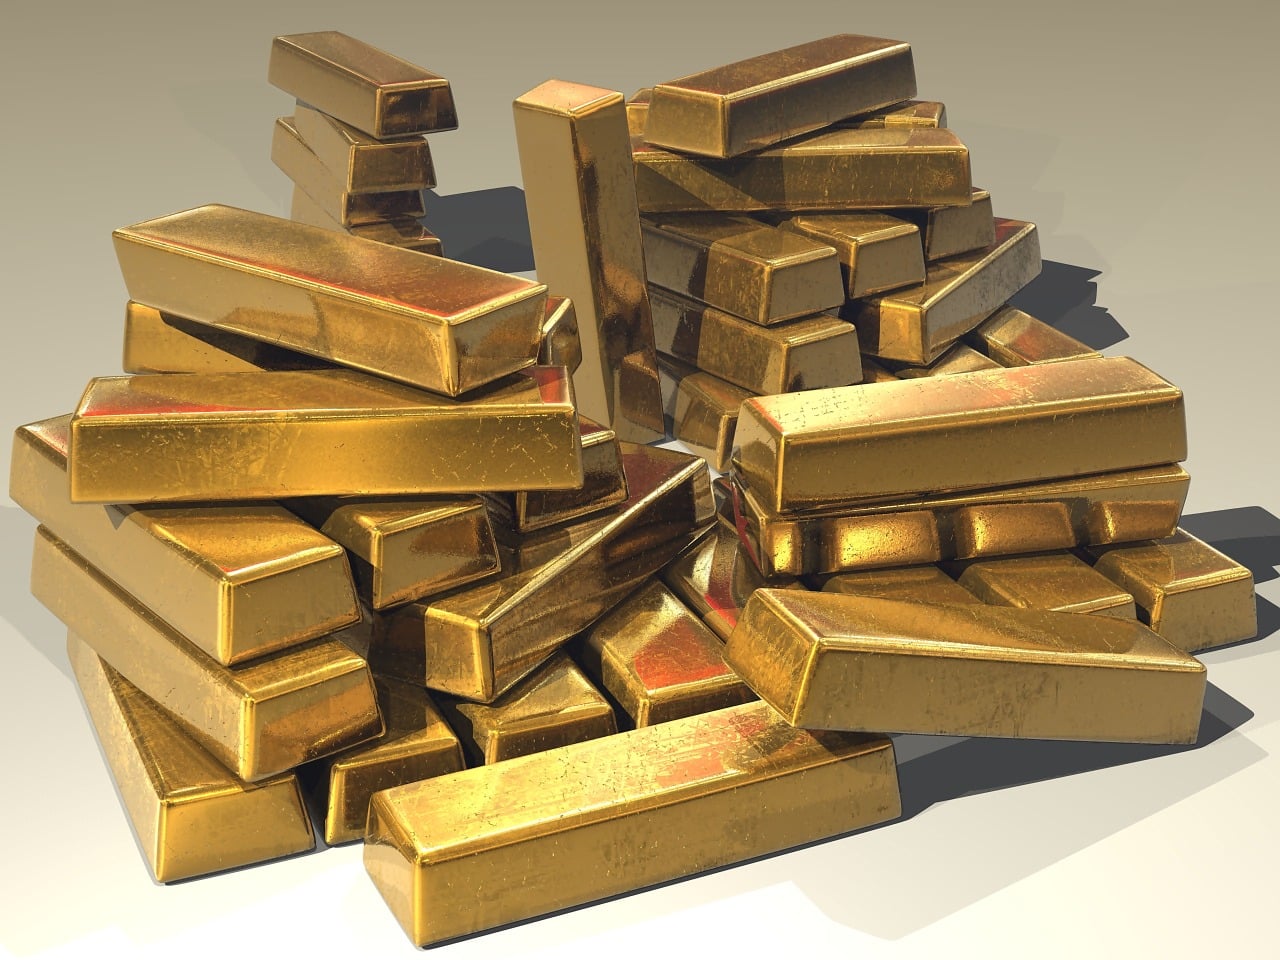 https://www.valuewalk.com/2019/10/gold-bullion-prices/